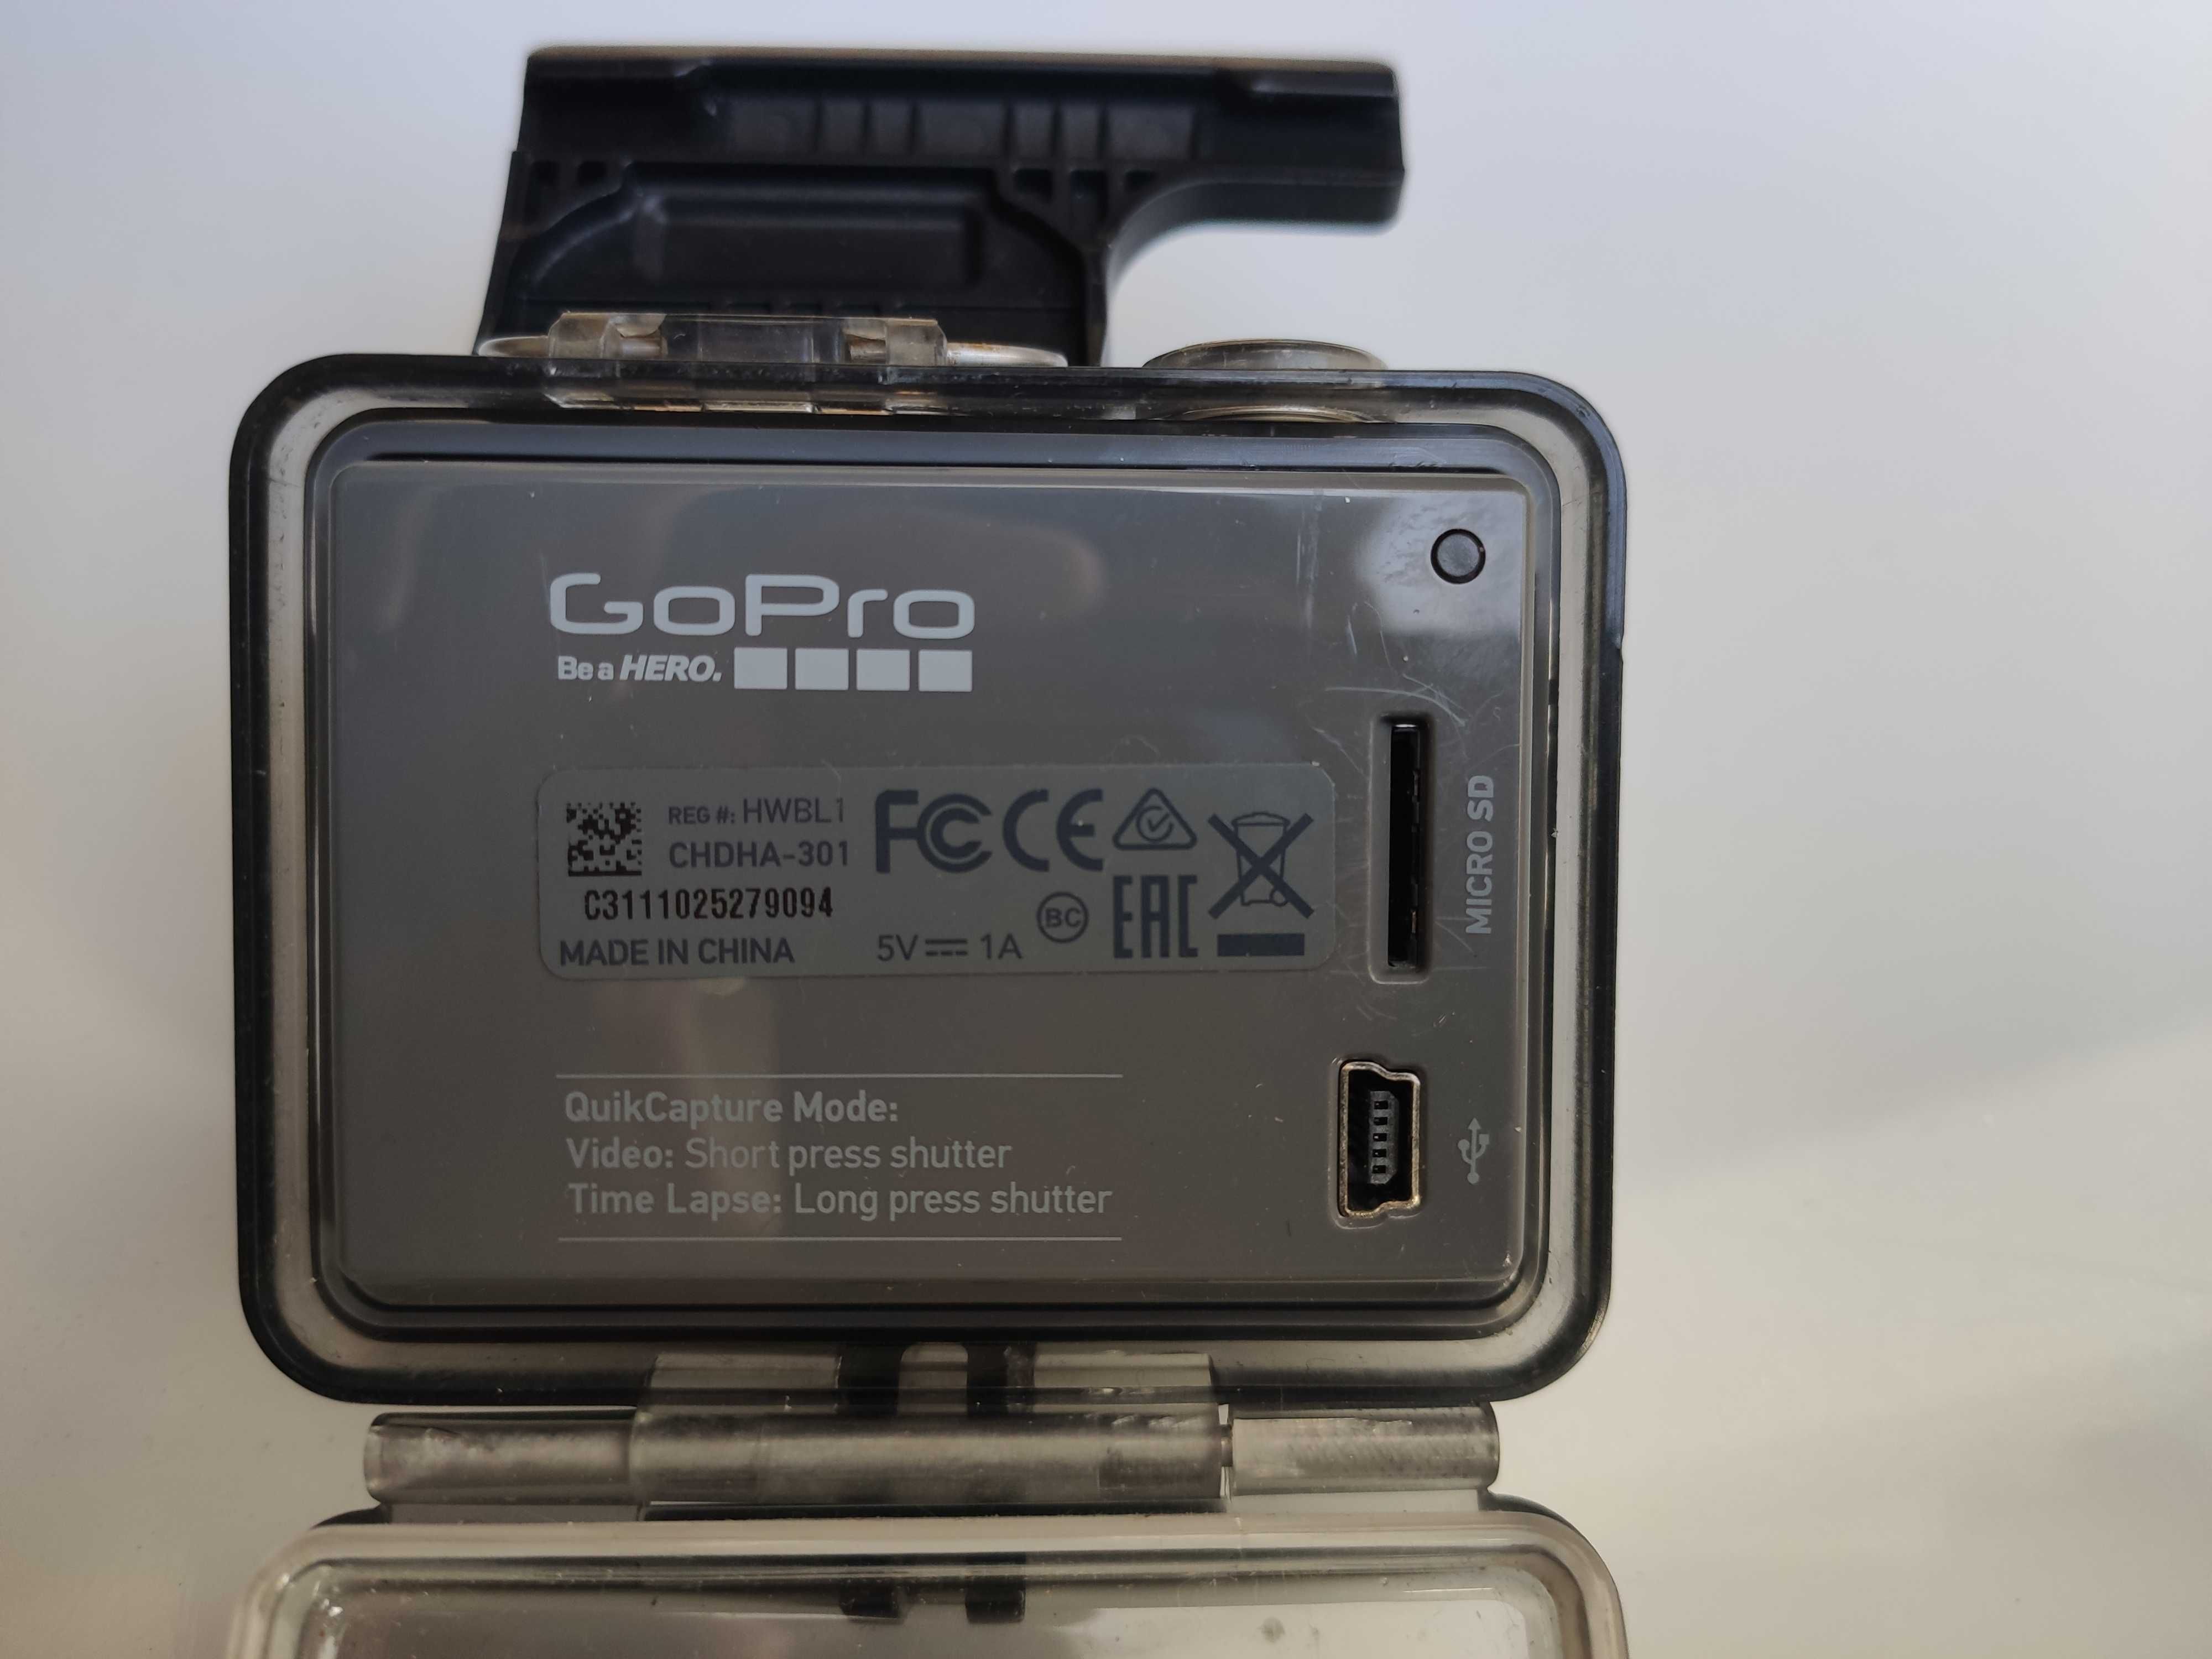 GoPro Go Pro entry level 1080p